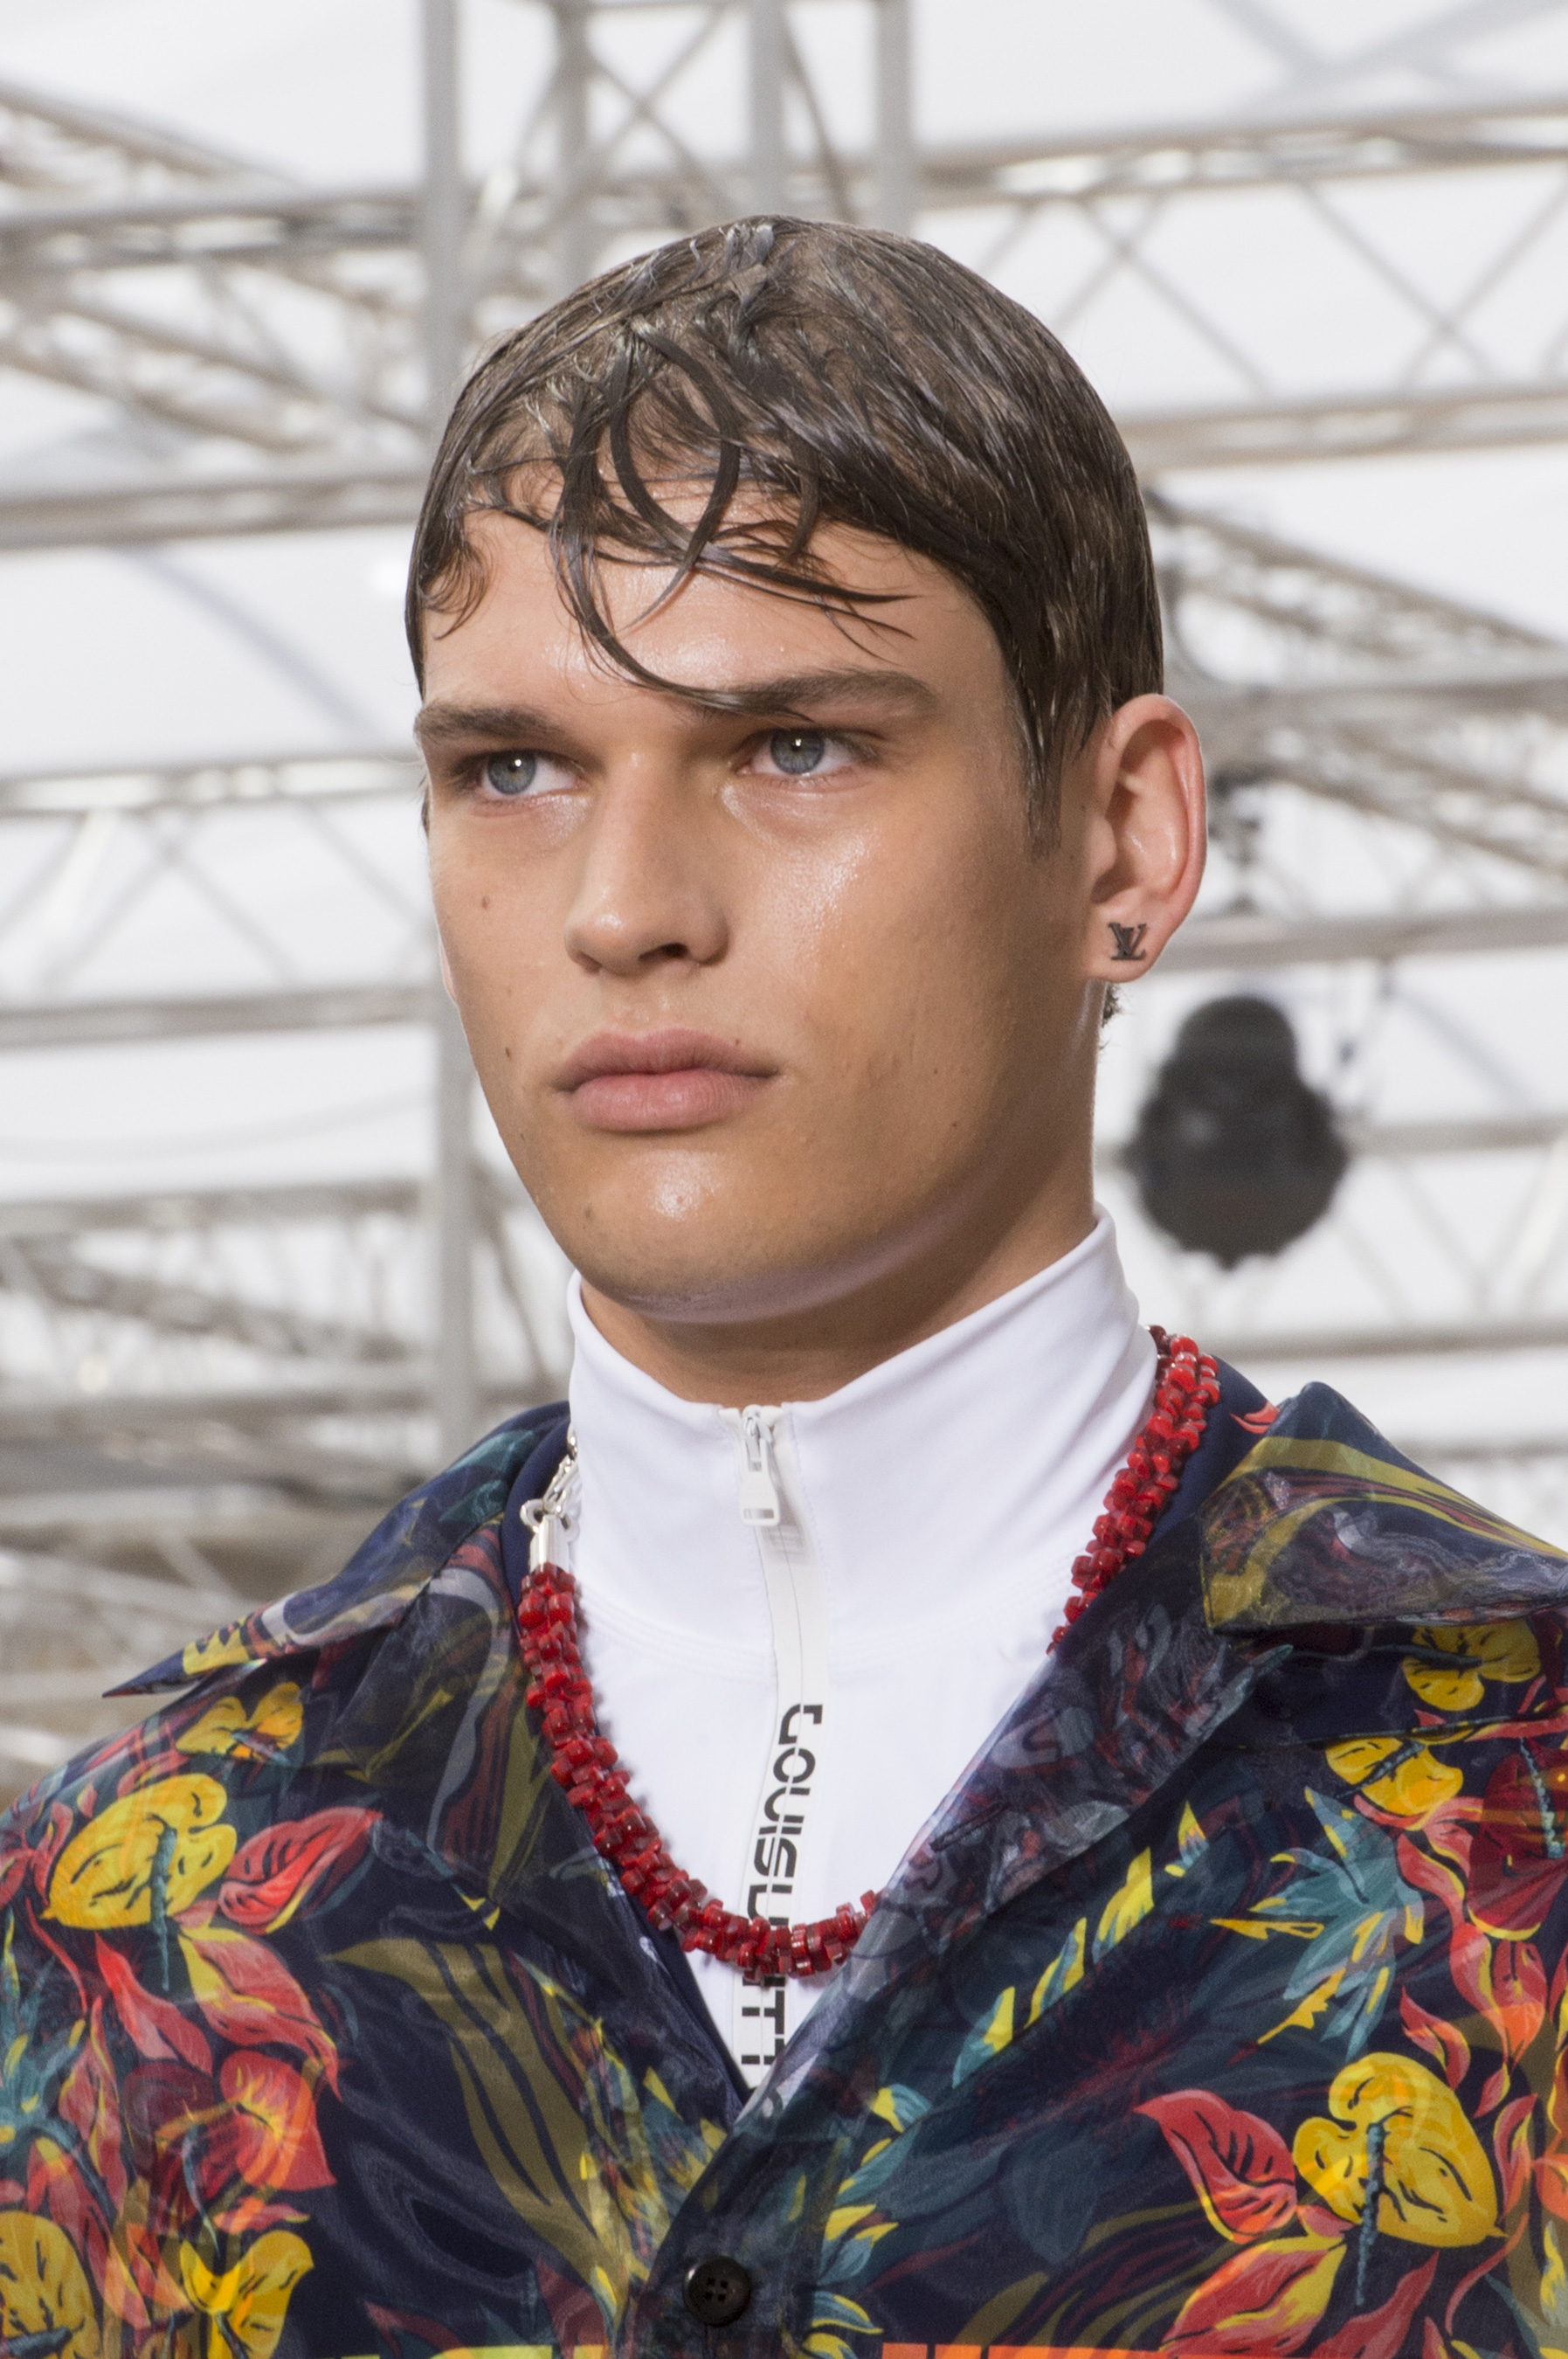 Louis Vuitton Spring 2018 Men's Fashion Show Details - The Impression